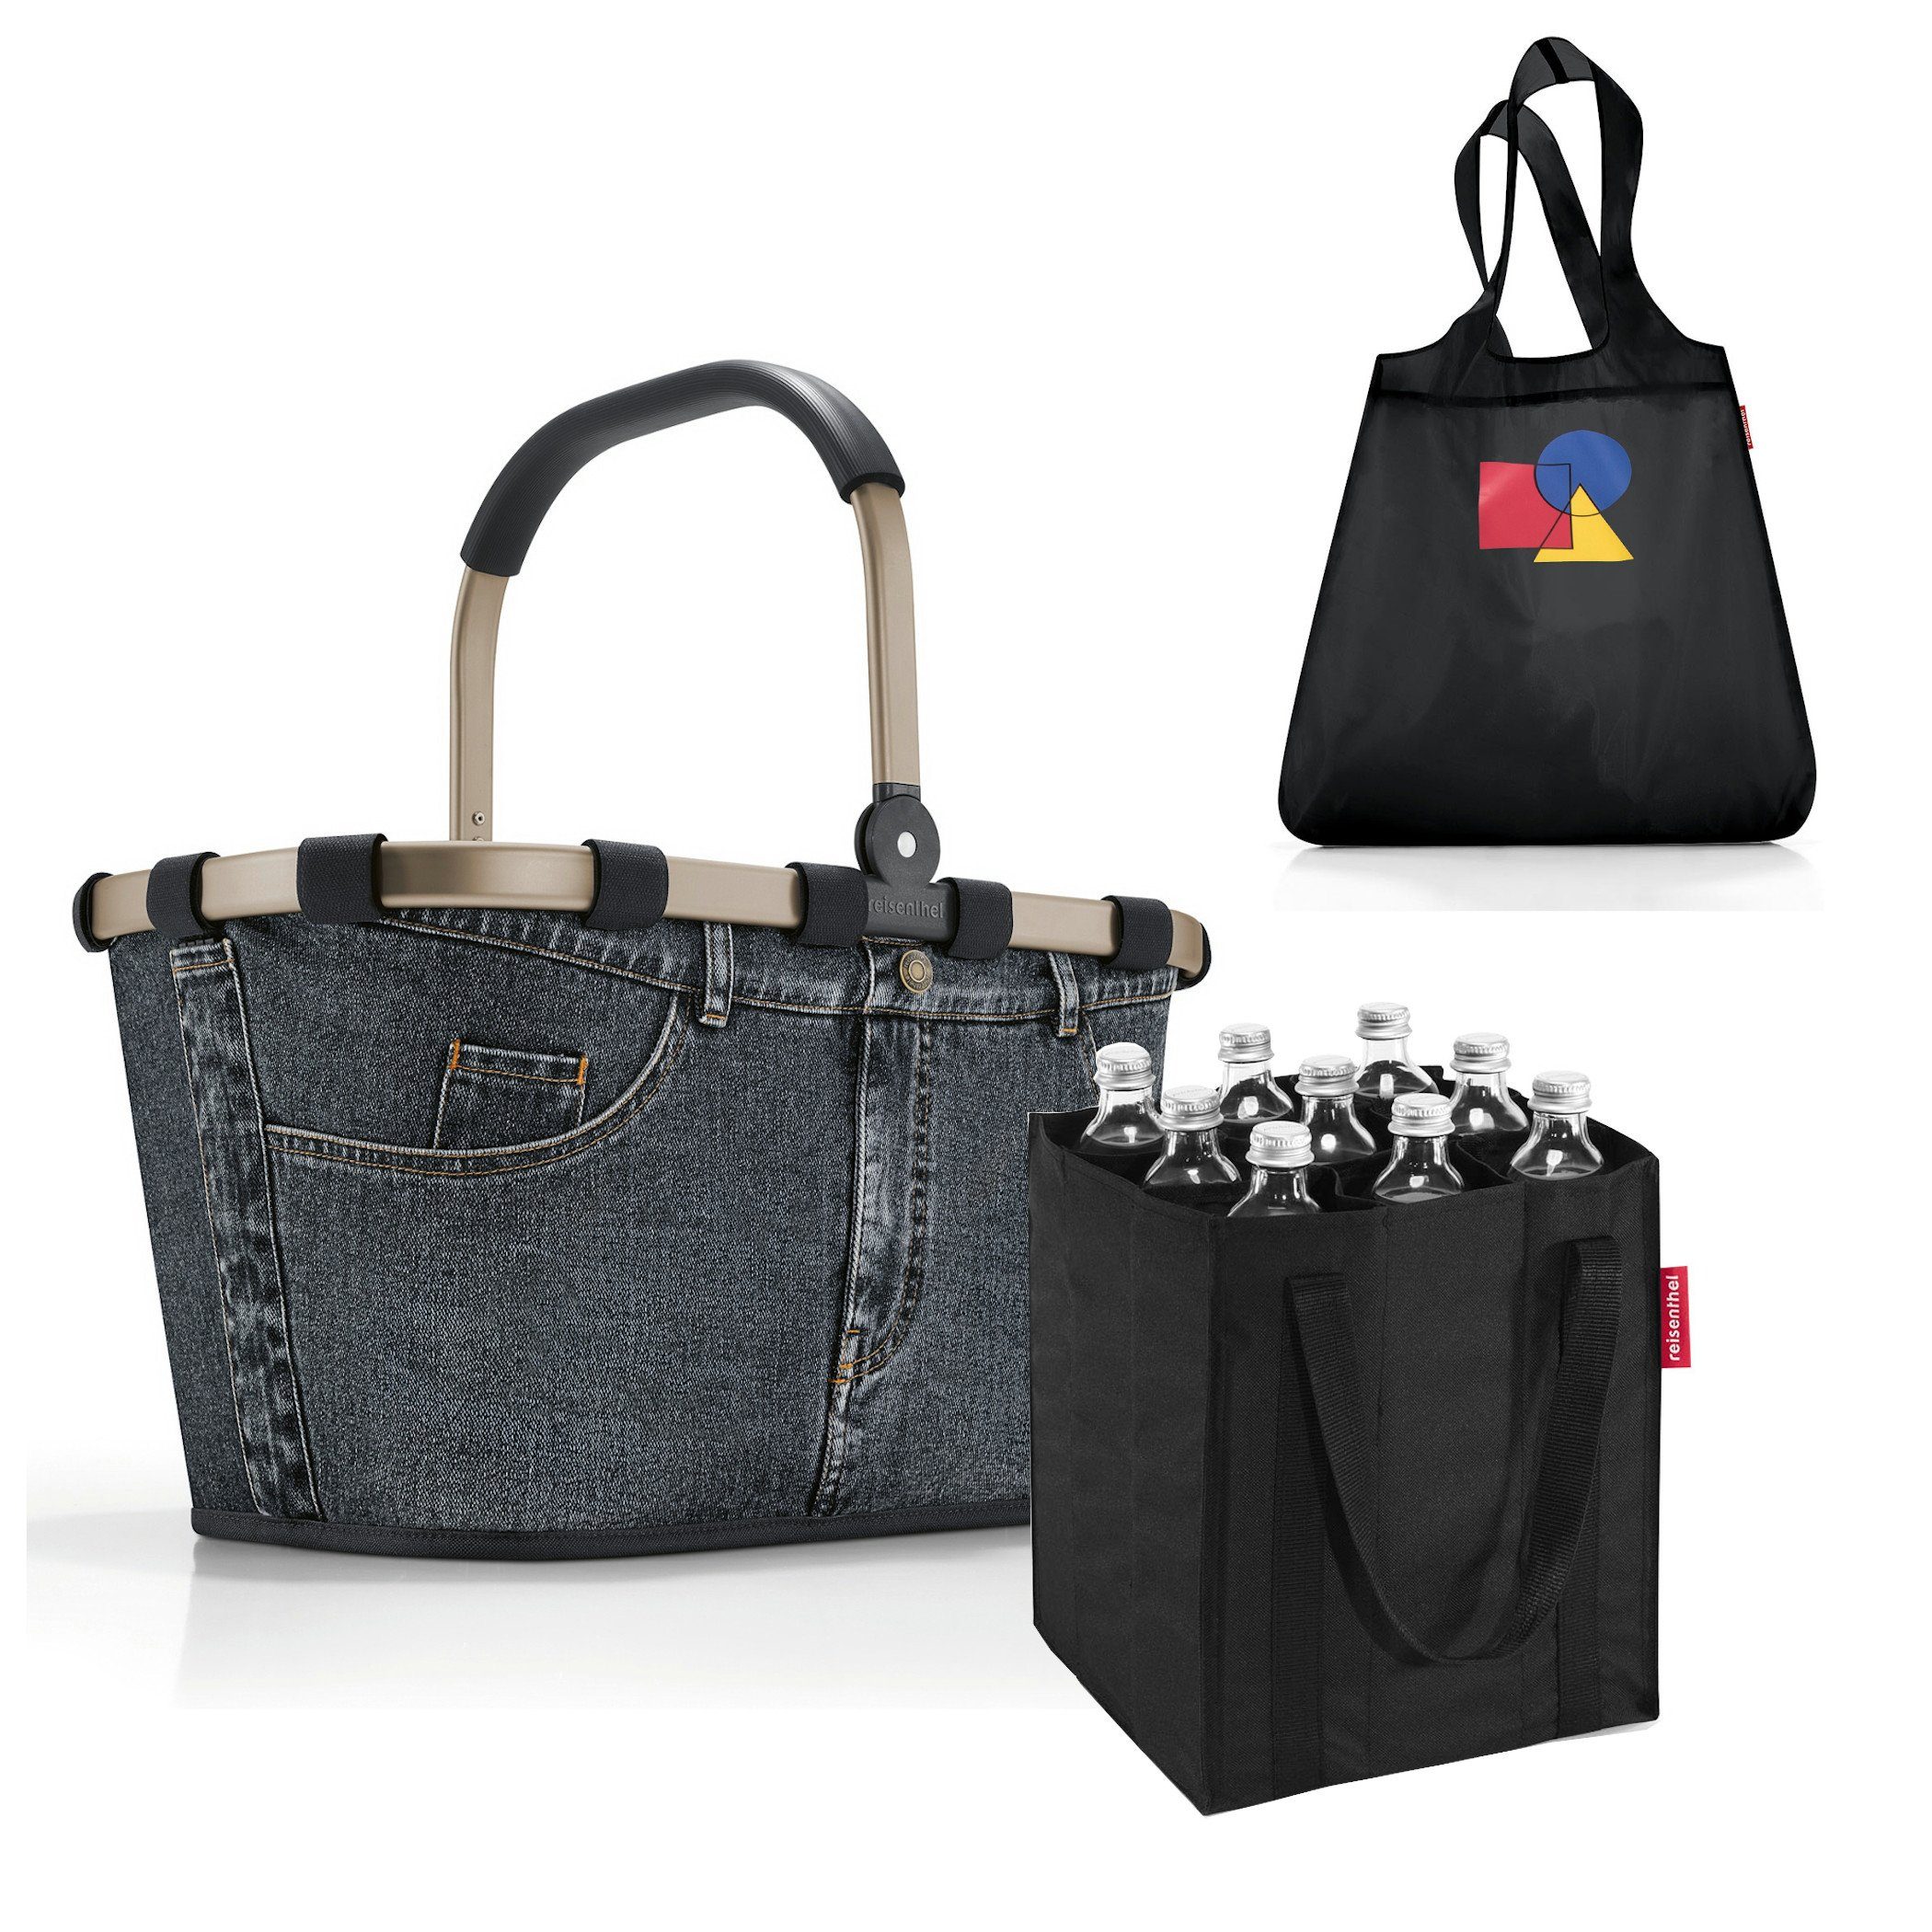 REISENTHEL® Einkaufskorb Set aus carrybag, coolerbag und bottlebag, Einkaufskorb-Set für Wochenmarkt und Großeinkauf